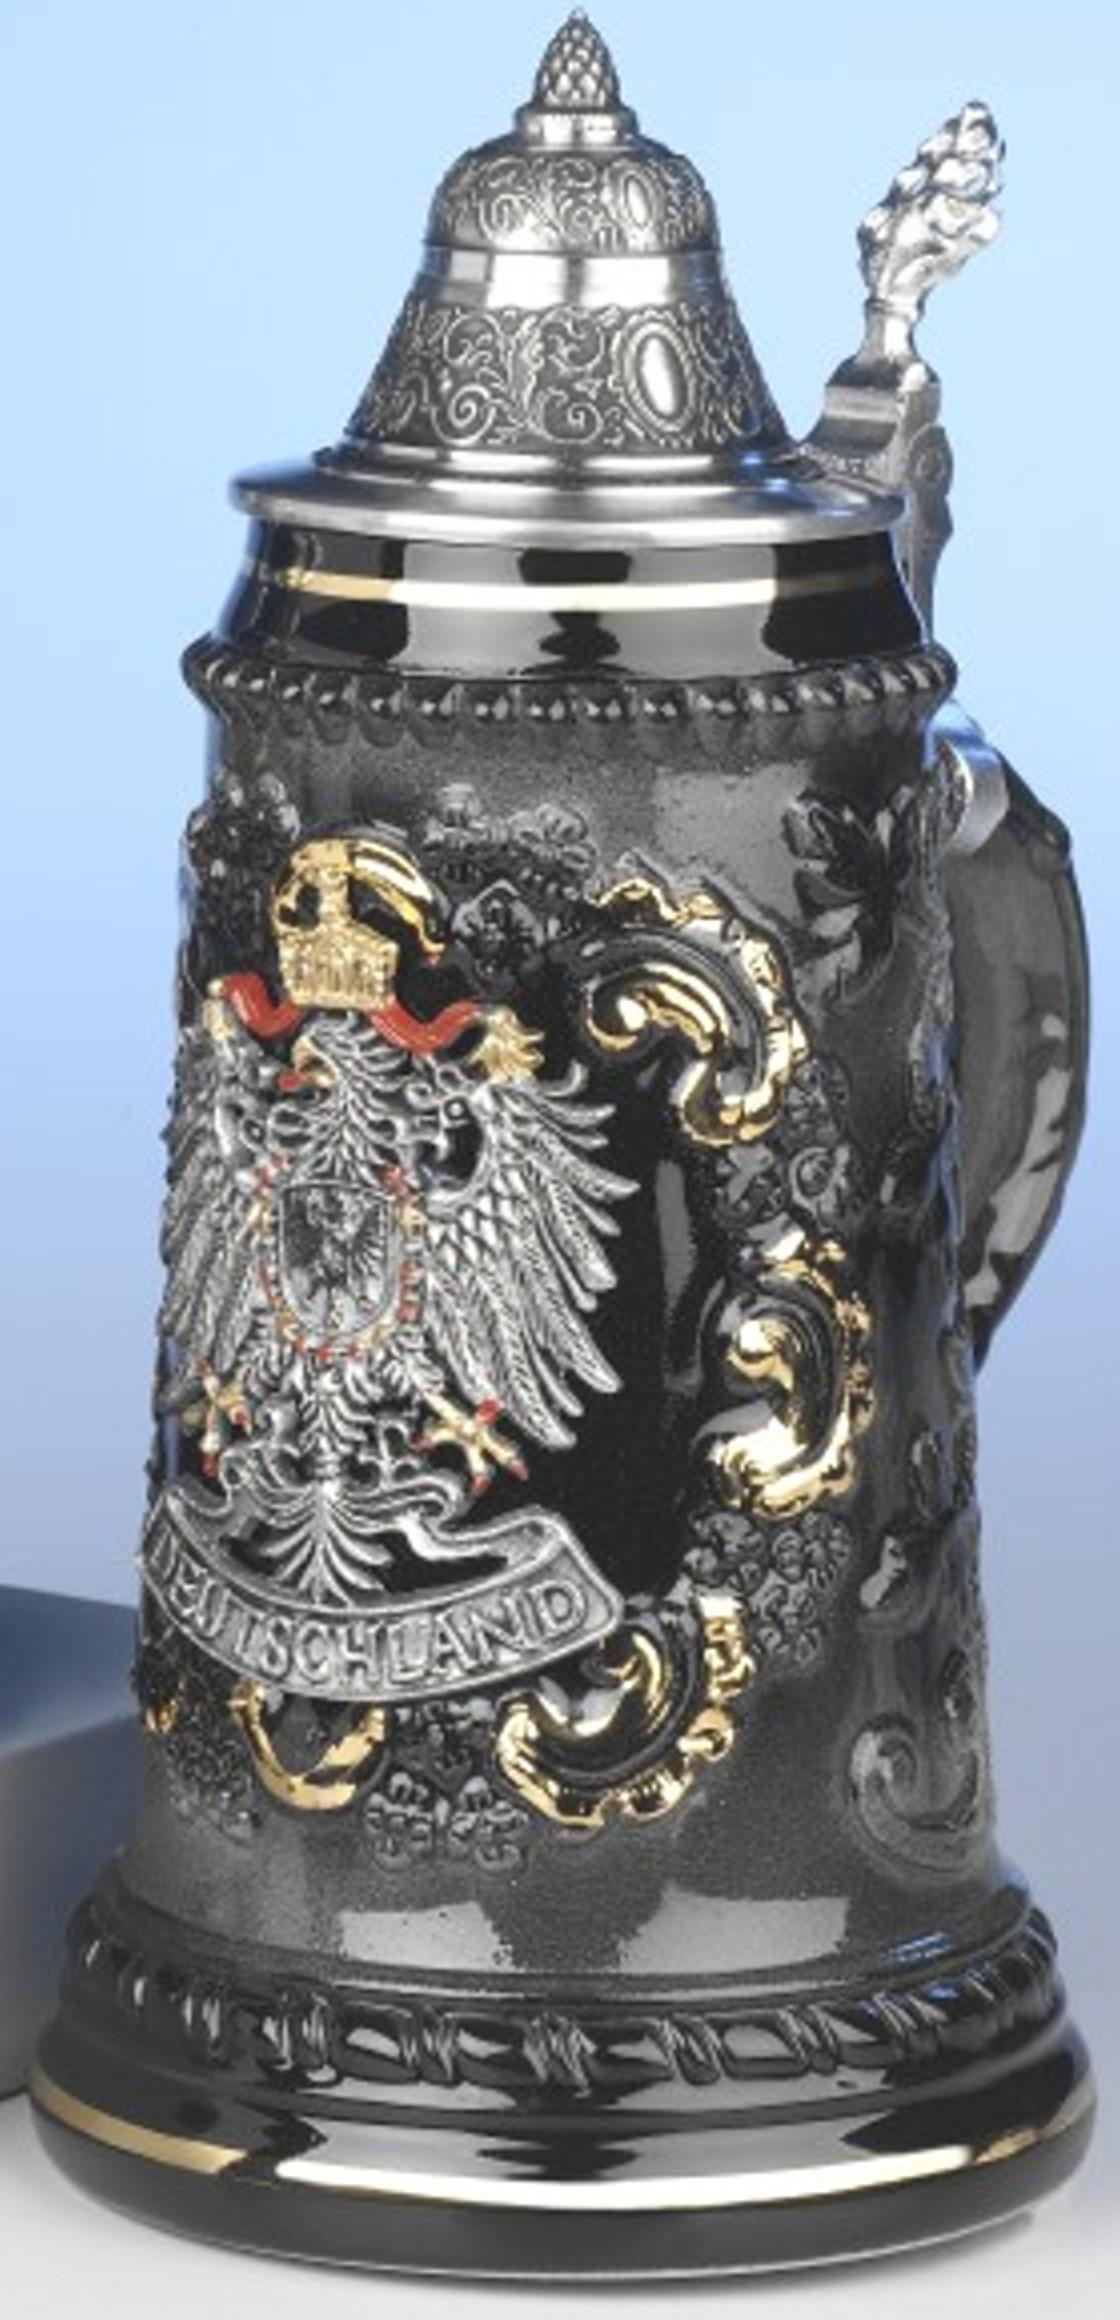 Foto Jarra de cerveza alemana alemana con águila de estaño, jarra 0,5 litros